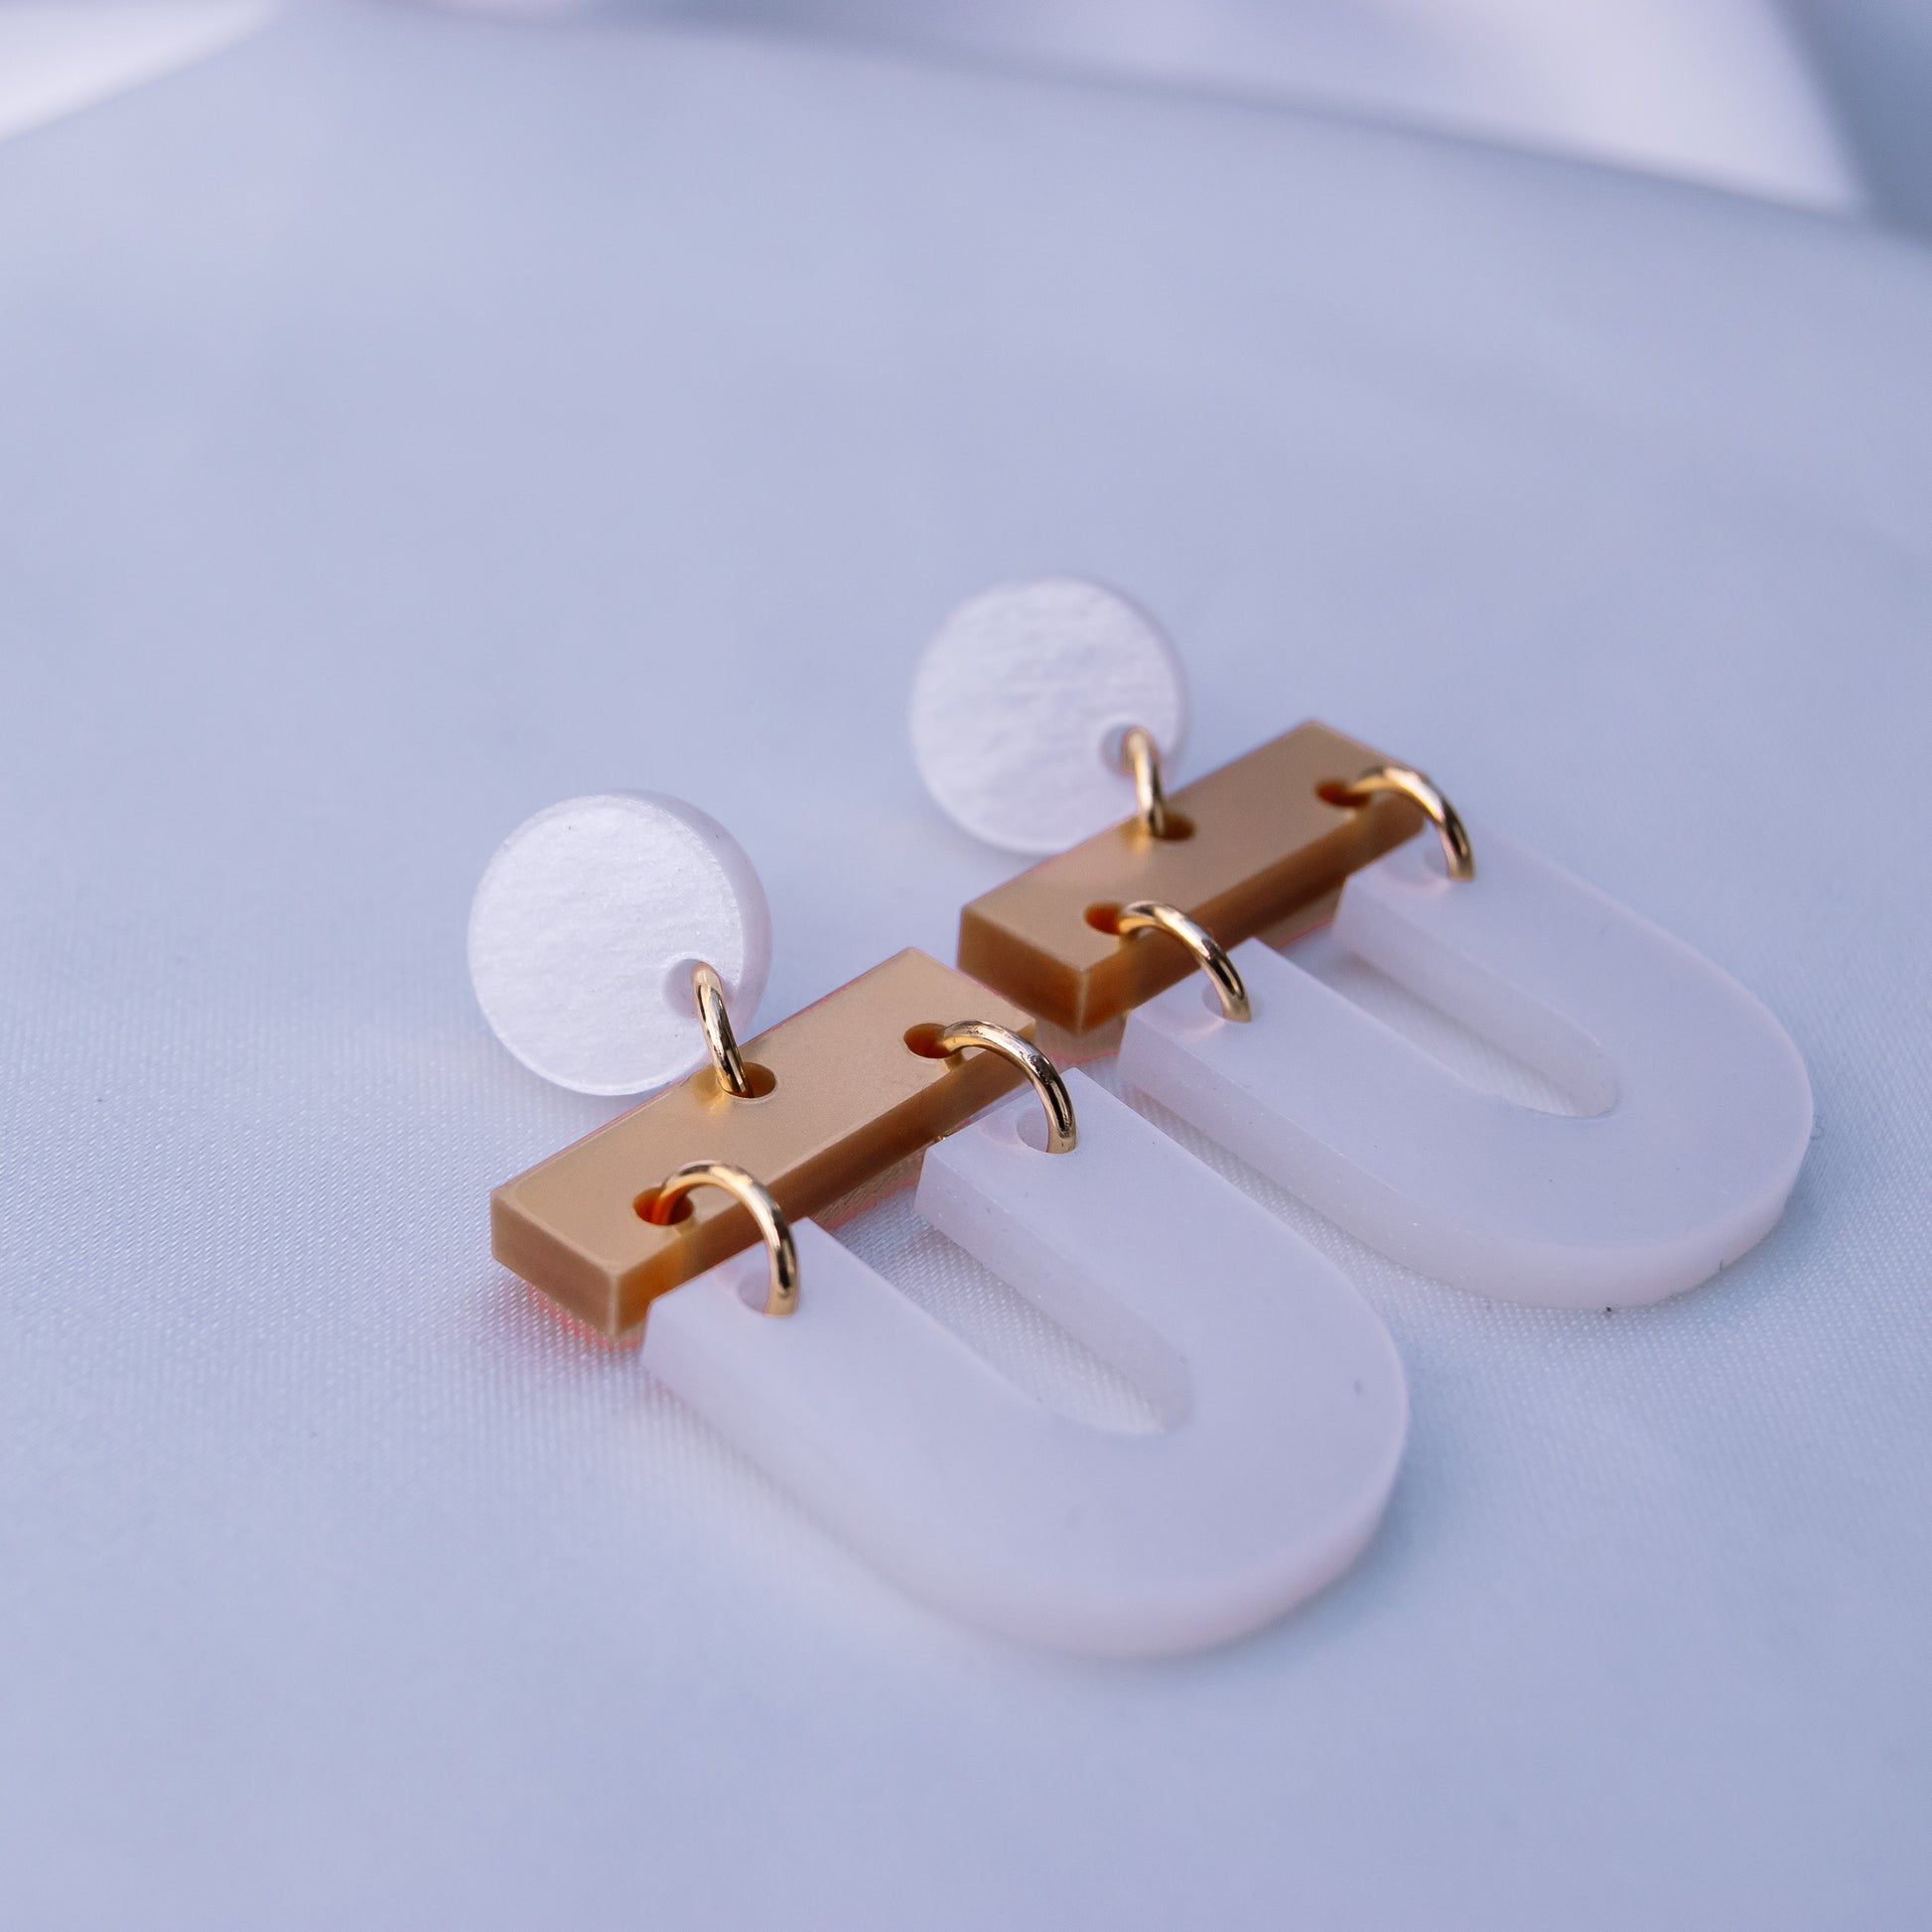 Zohra - Duurzame trendy oorbellen in een trendy ontwerp, gemaakt uit gerecycleerd acryl - Oorbellen - Keelin Design